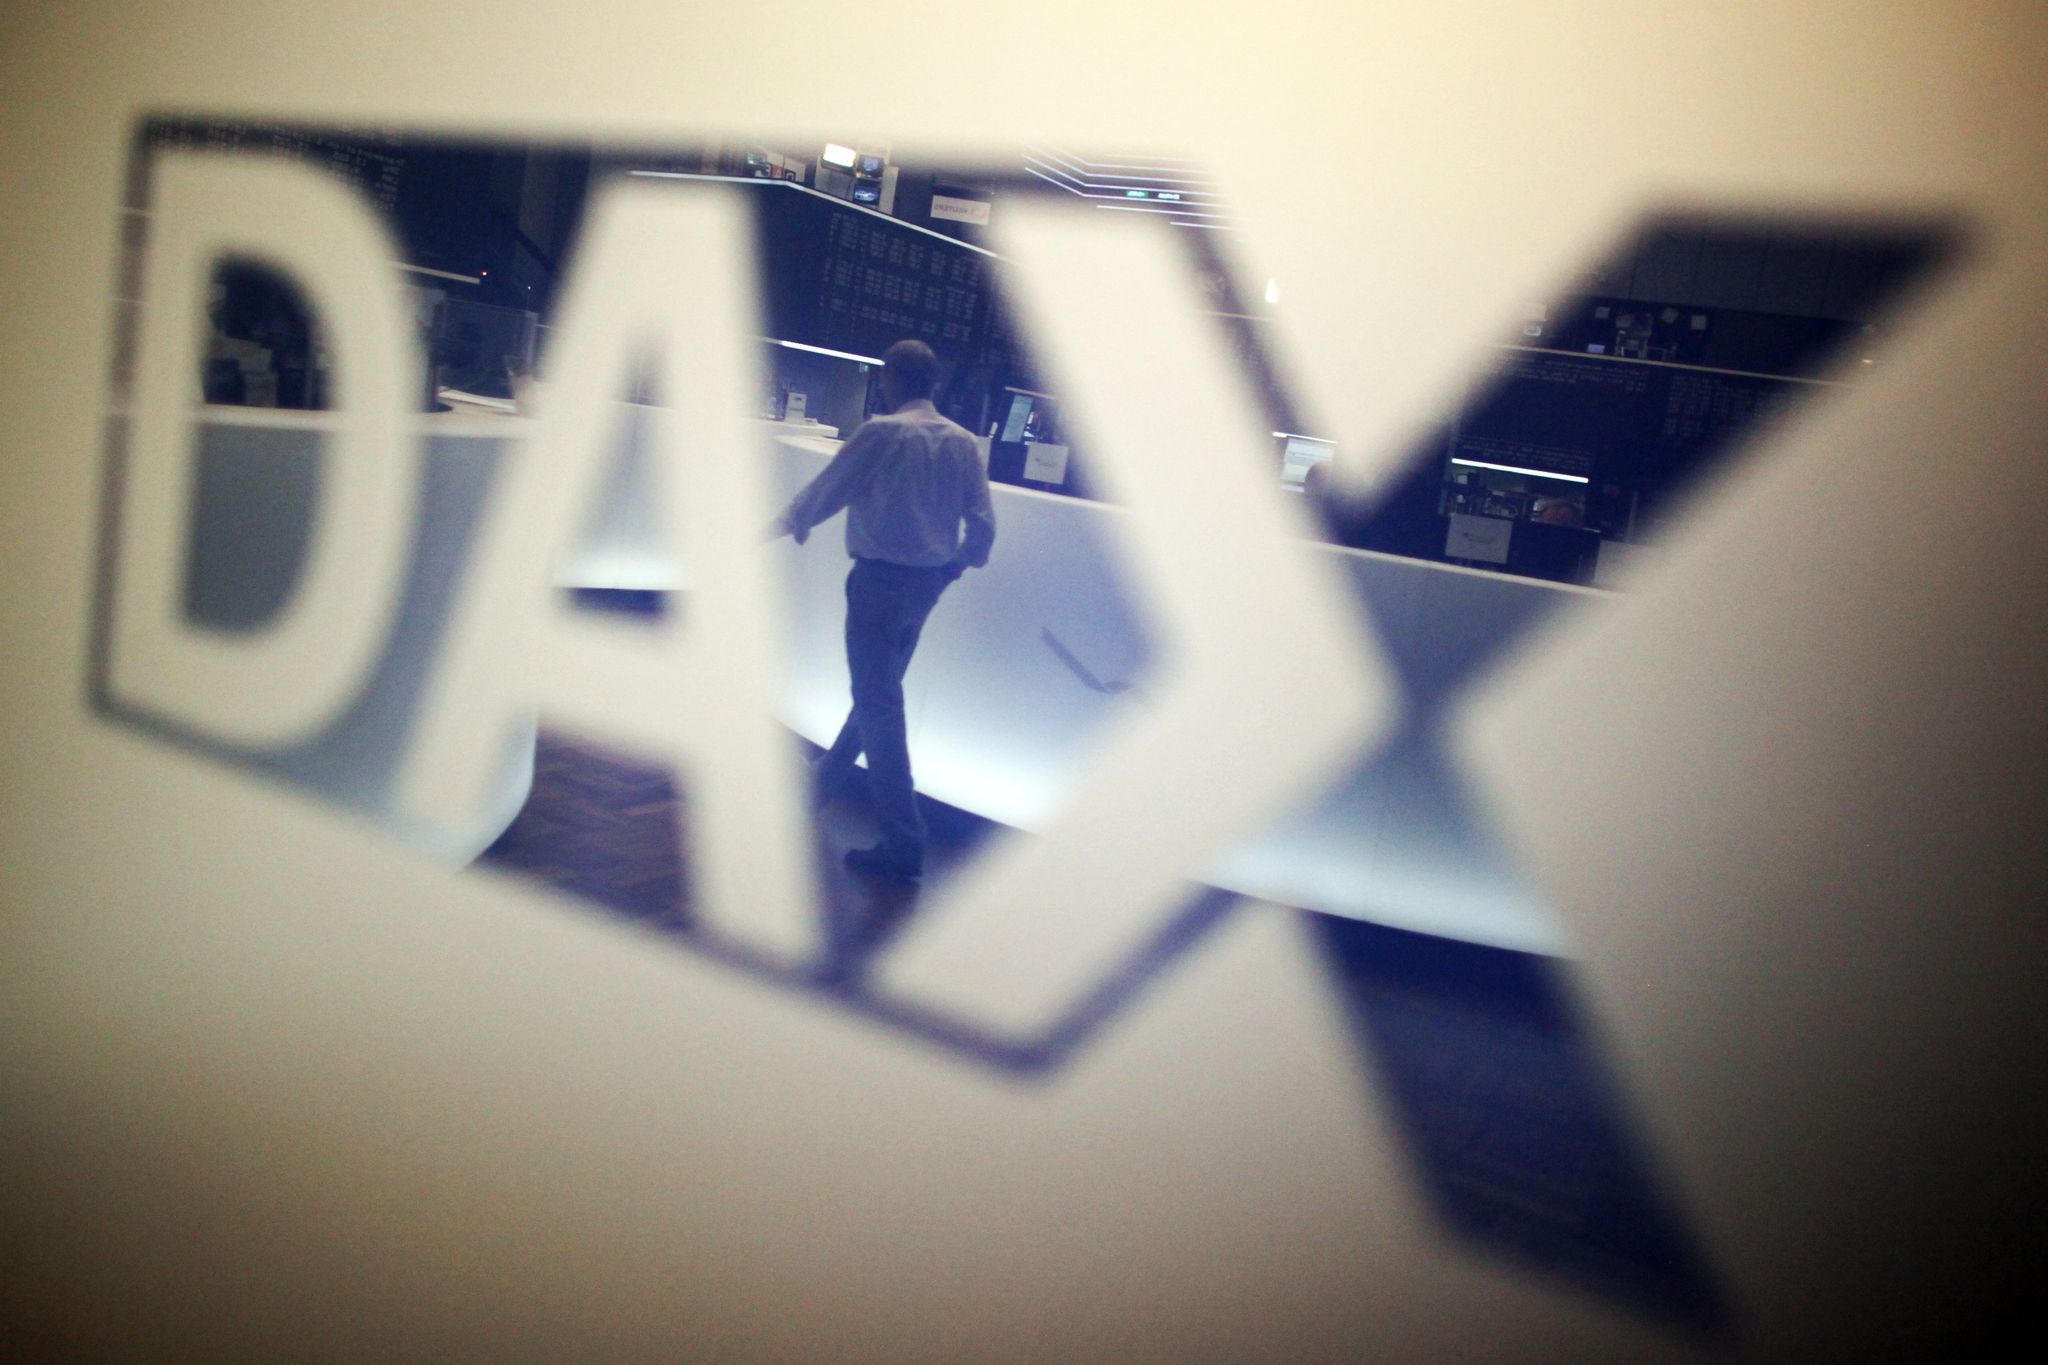 Dax mit knappem Plus – Zurückhaltung vor US-Preisdaten